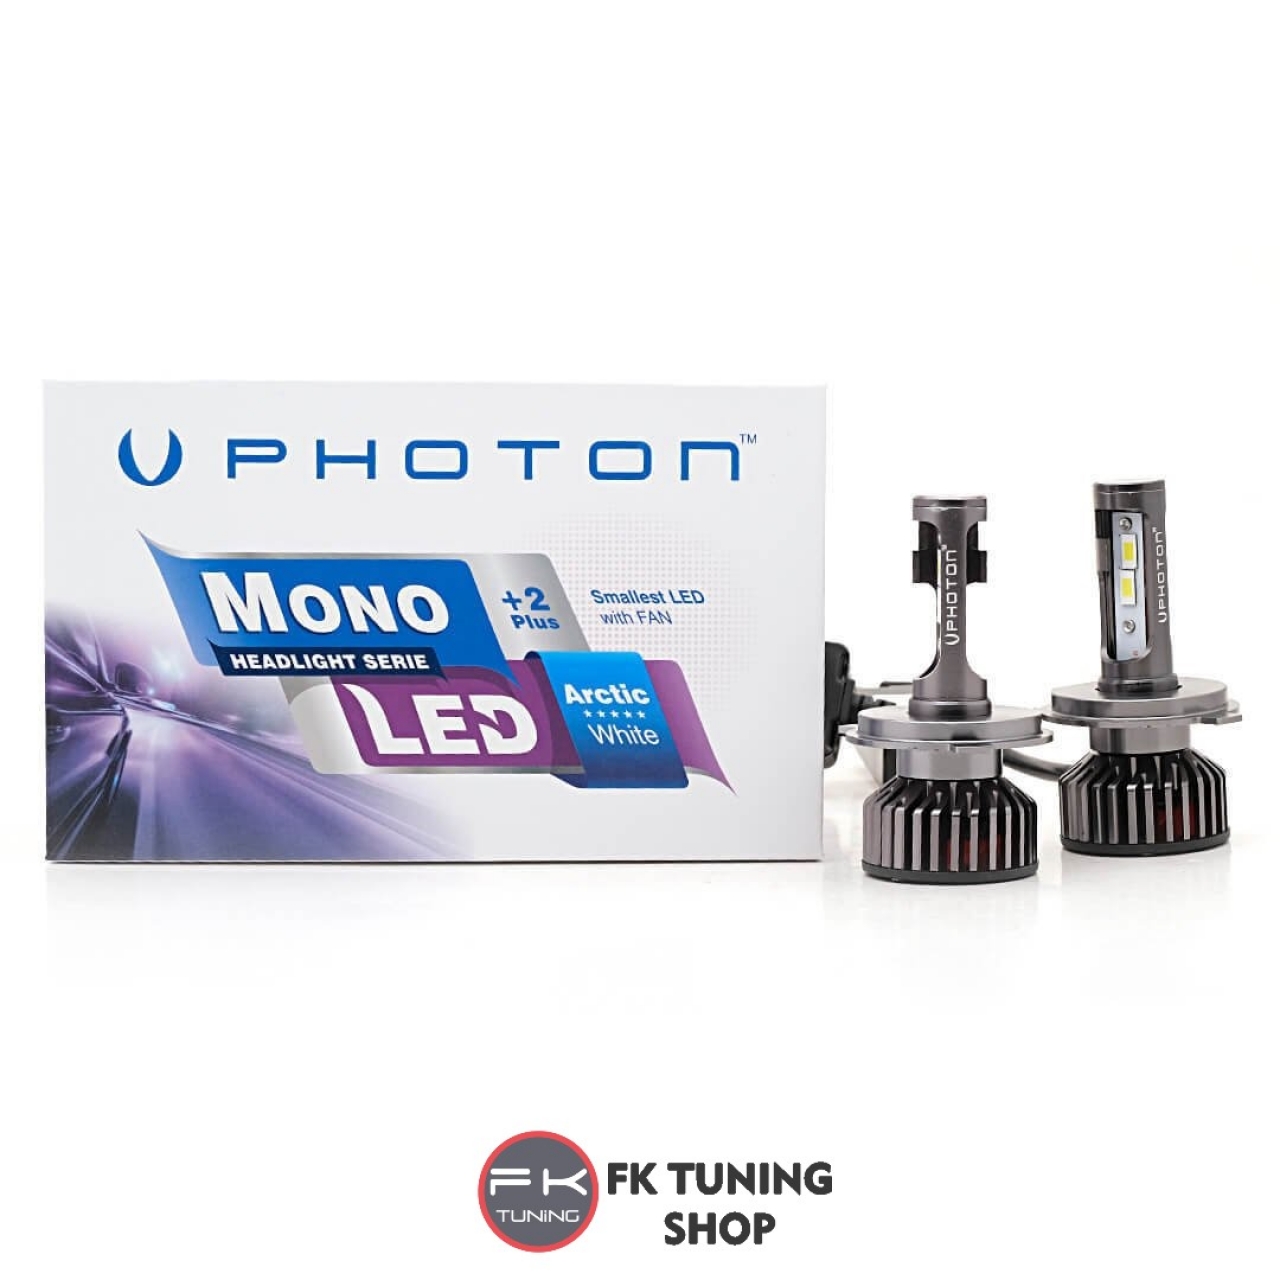 PHOTON 9006 LED XENON MONO SERİSİ +2 Plus Serisi 